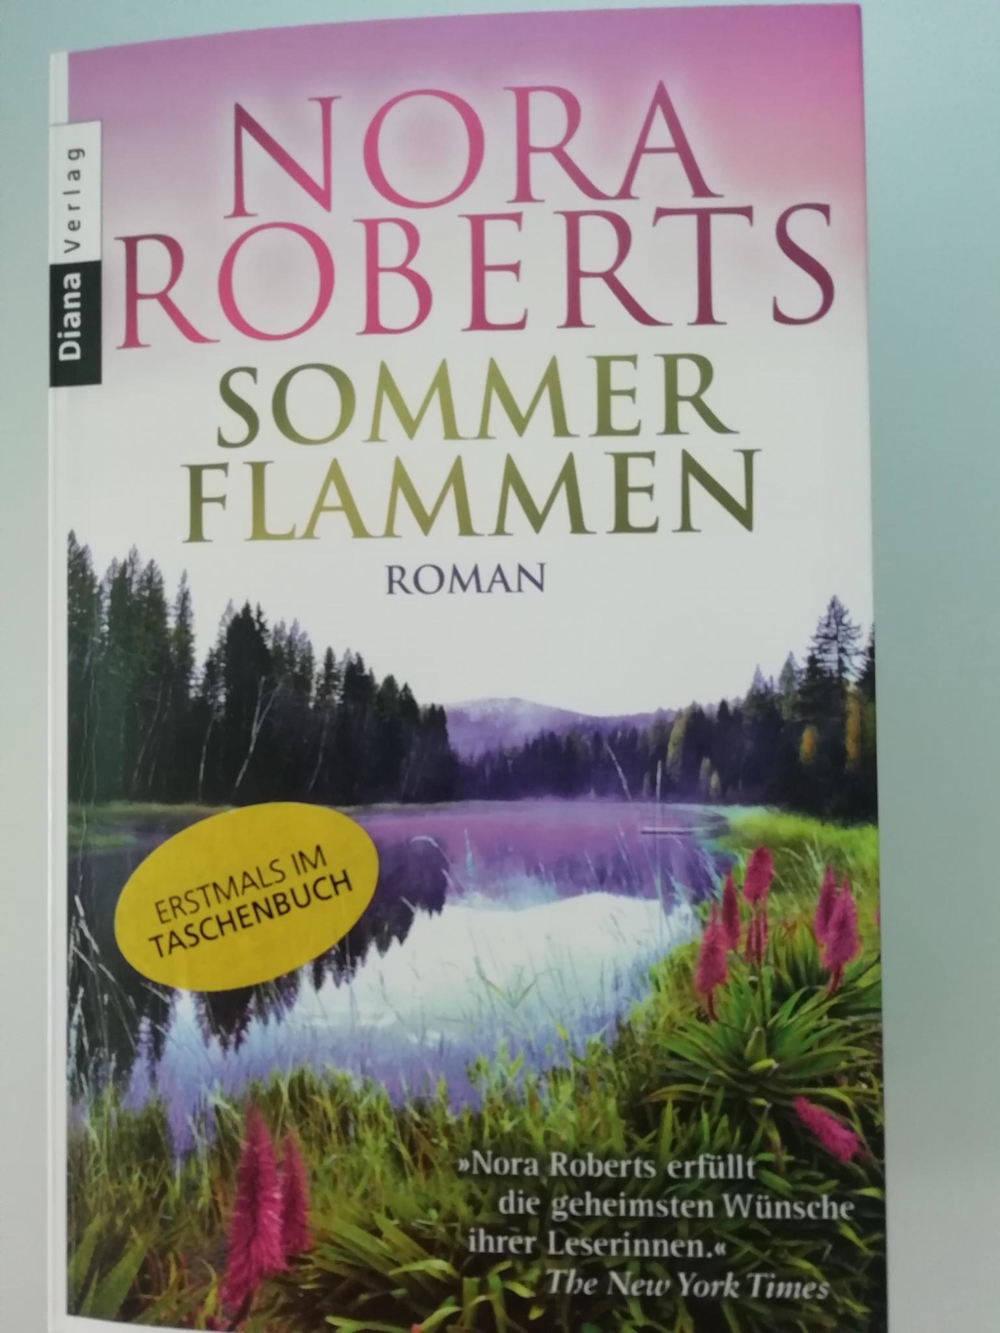 Sommerflammen - Nora Roberts - Softcoverroman in sehr gutem Zustand